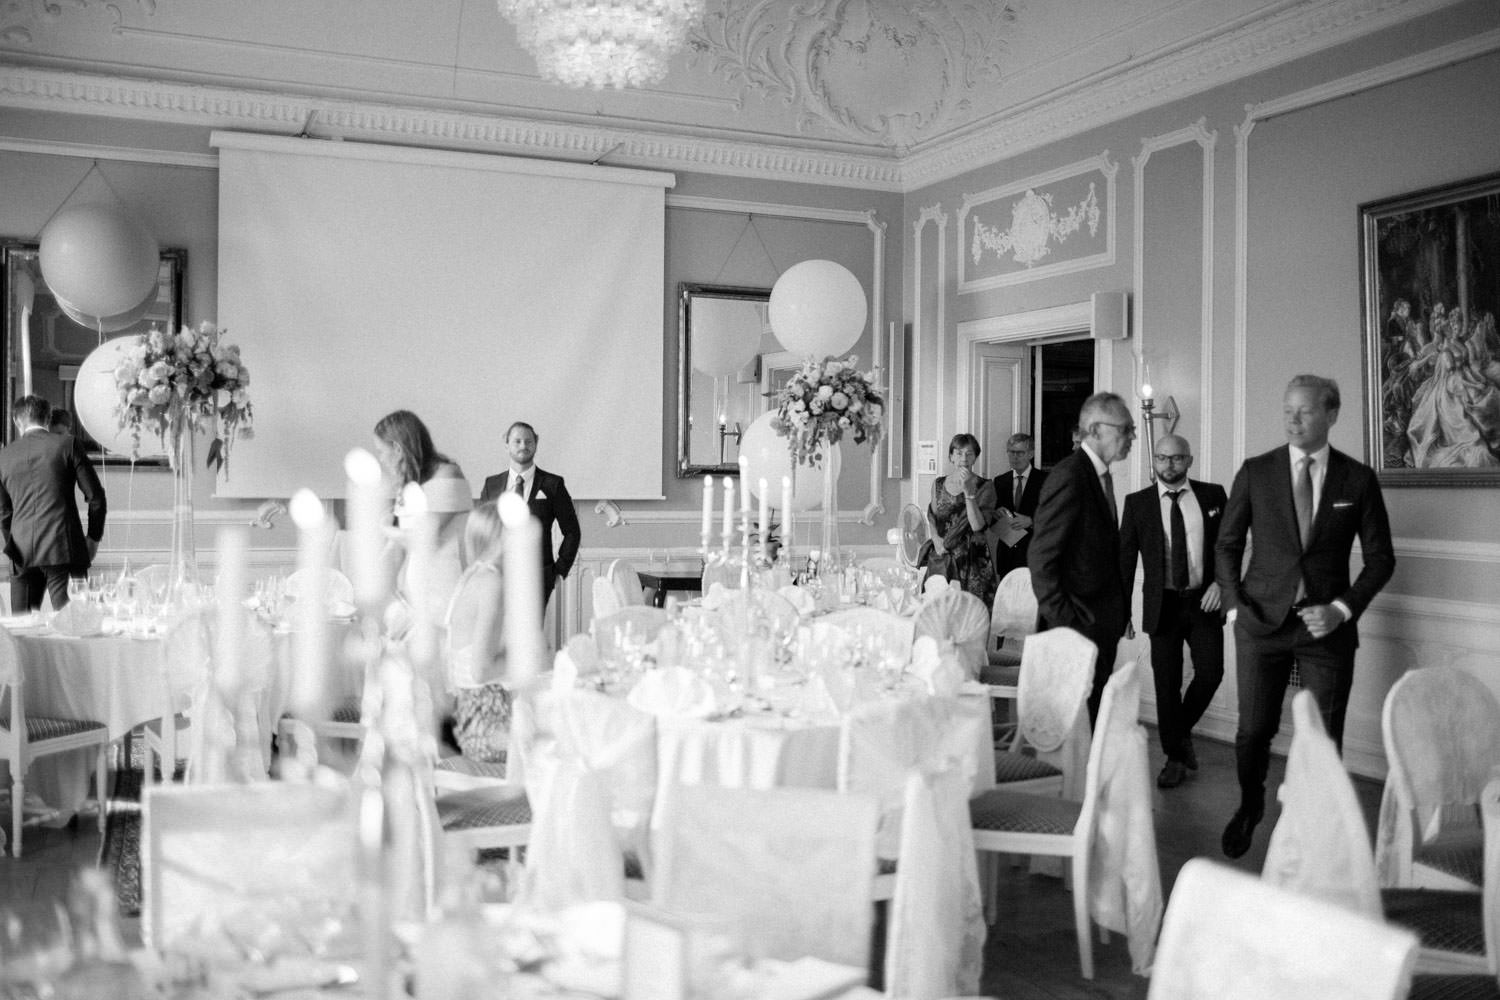 Bröllopsdukning i matsalen Tranchell på Örenäs Slott, Skåne. Florist är Gouteva, fotograf är Tove Lundquist.